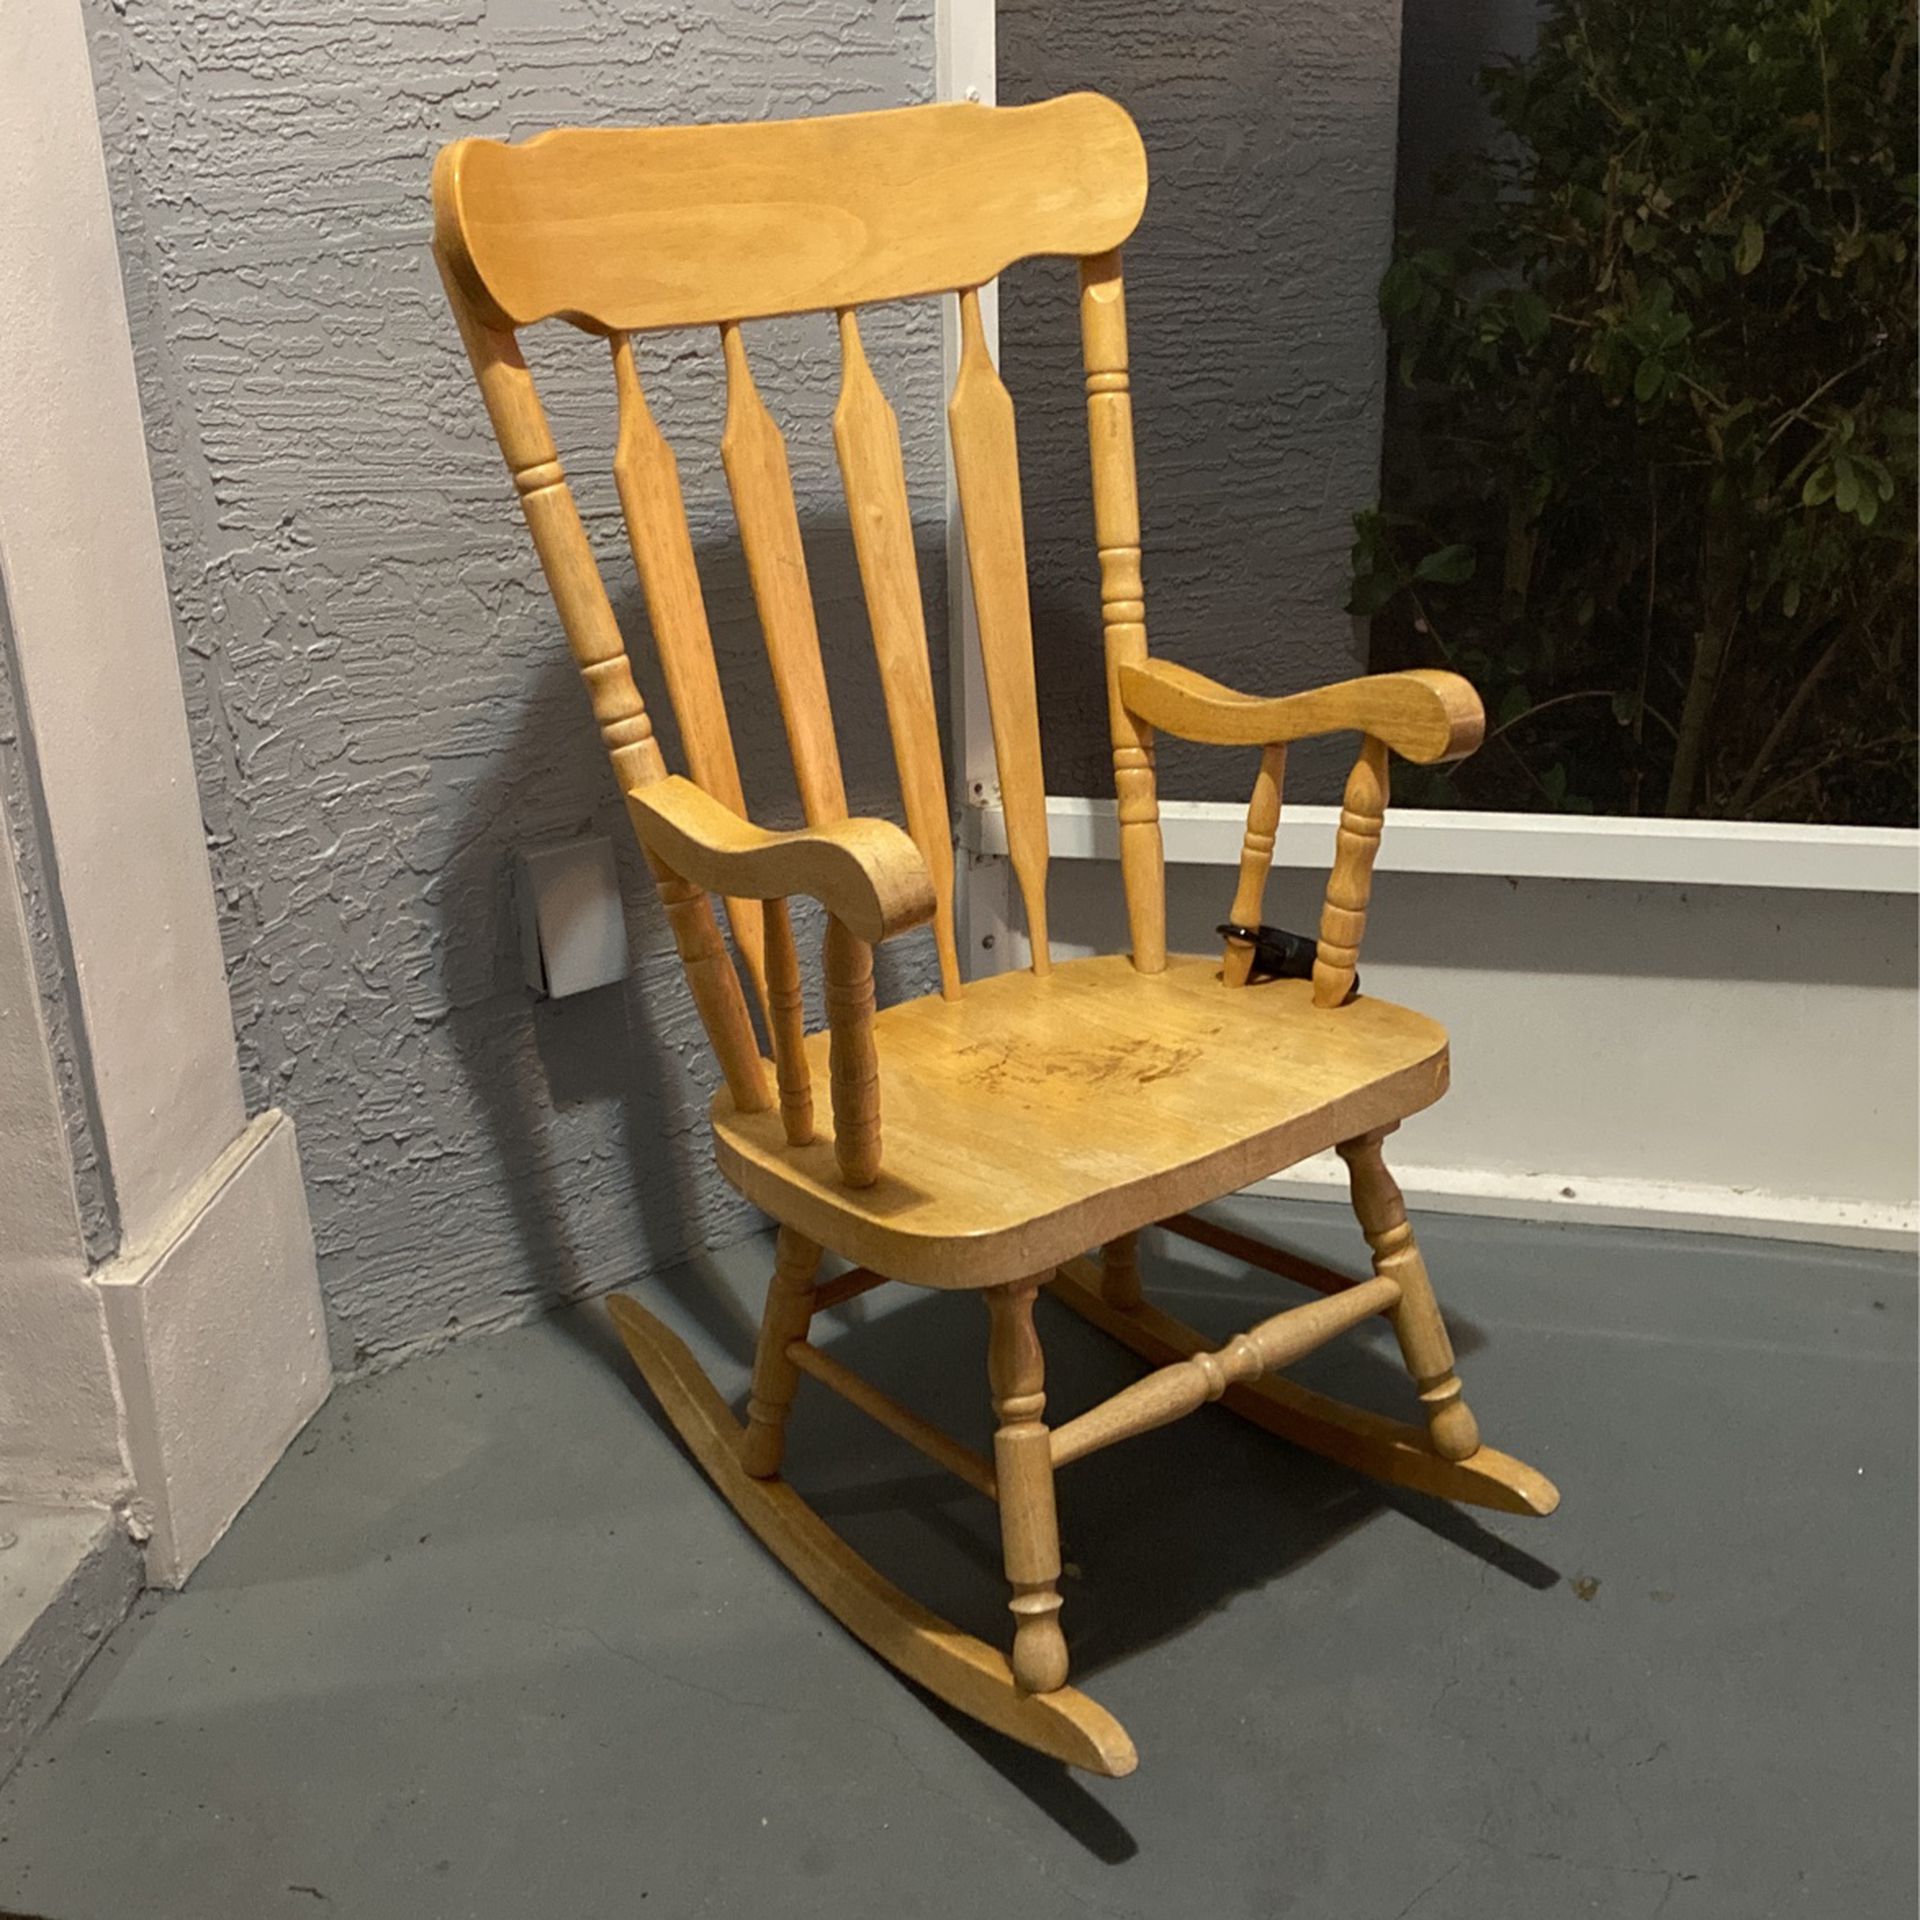 Hardwood Rocking Chair